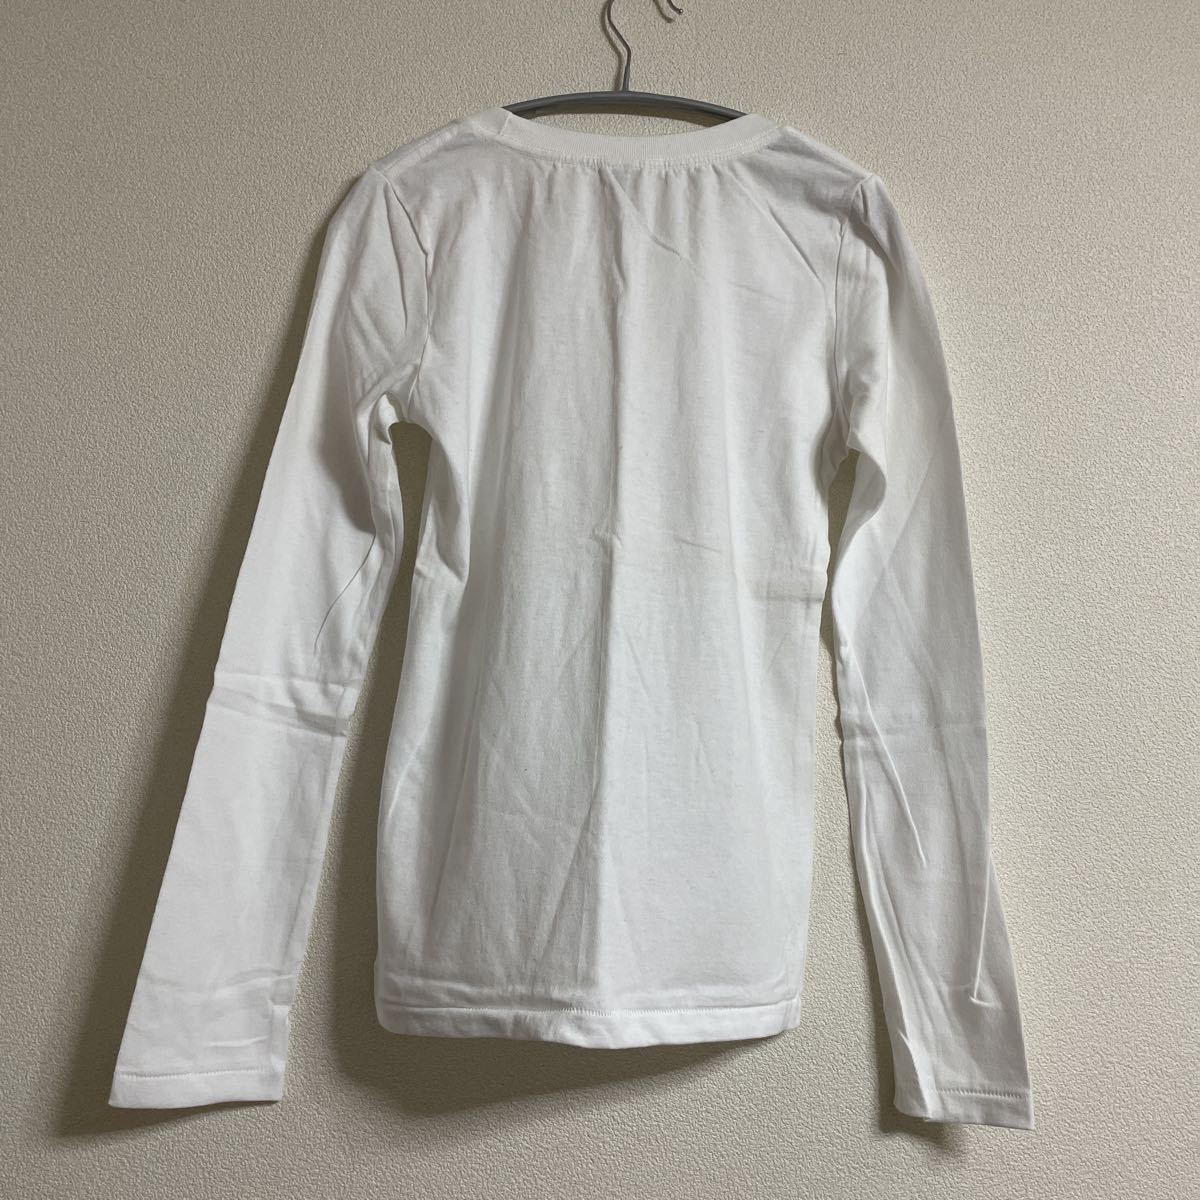 新品 難有 長袖Tシャツ トップス M ホワイト白 未使用 インナー 綿100% コットン 無地_画像3